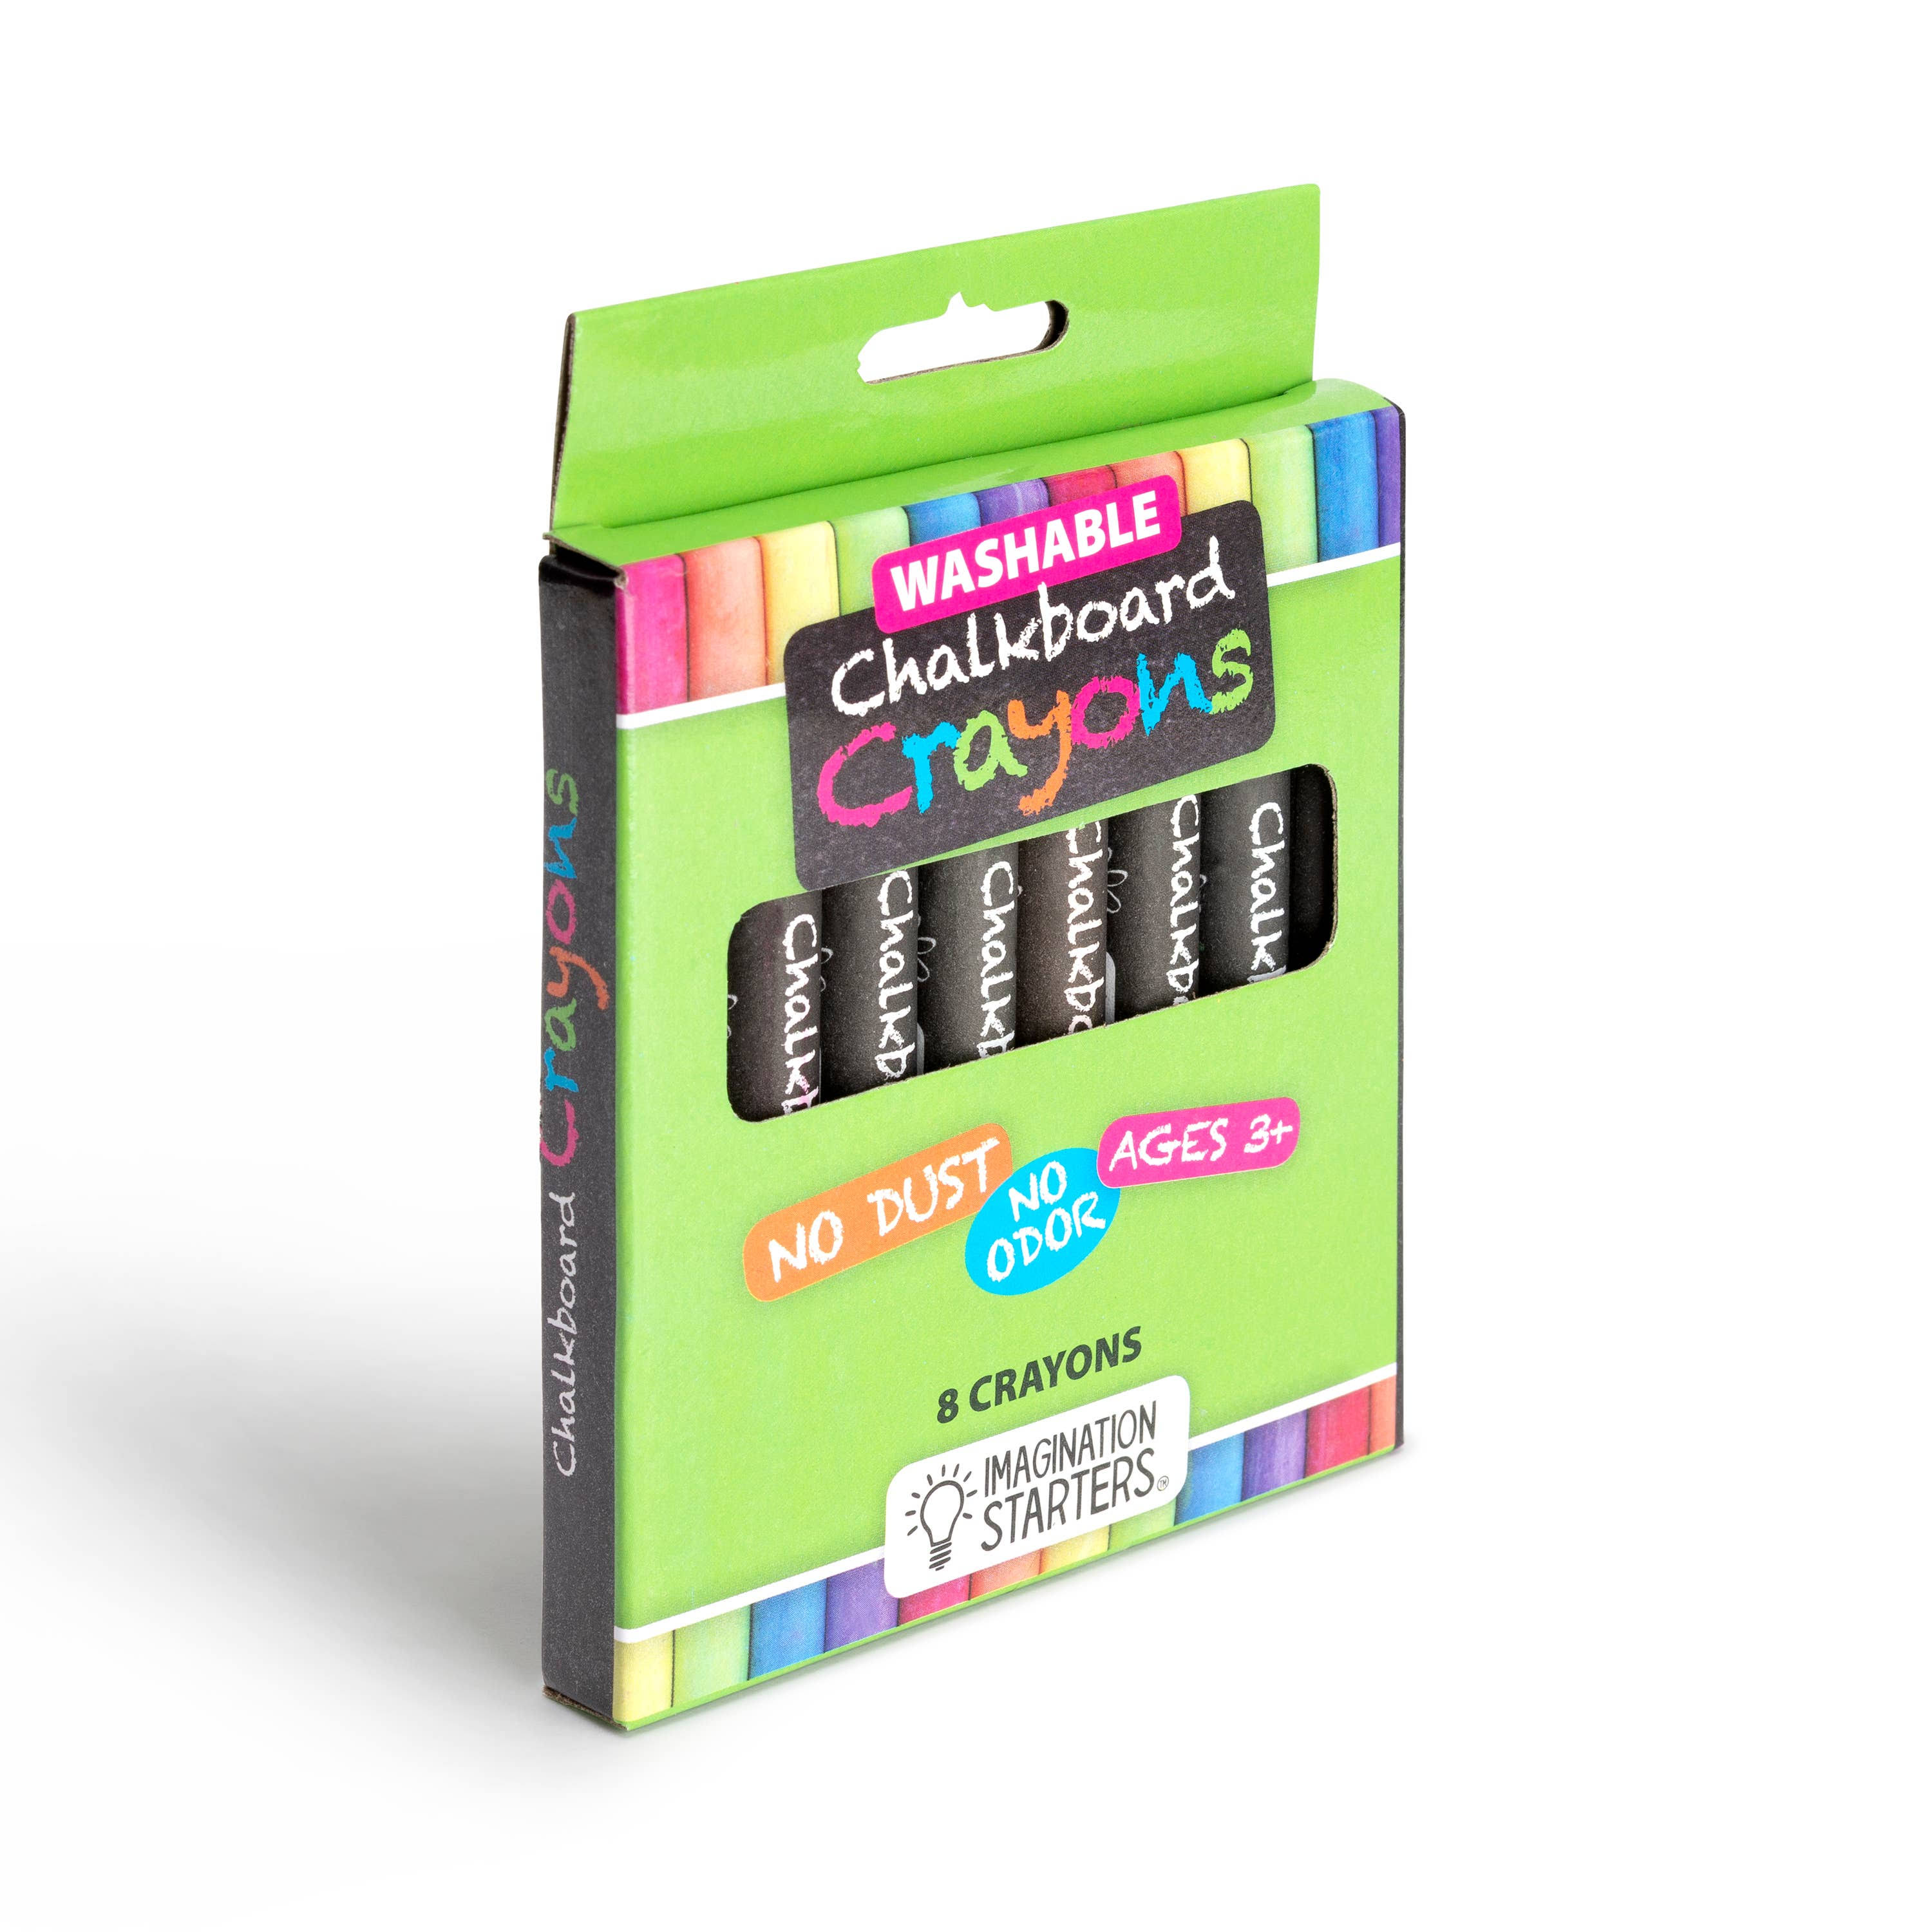 Washable Chalkboard Crayons (Set of 8)